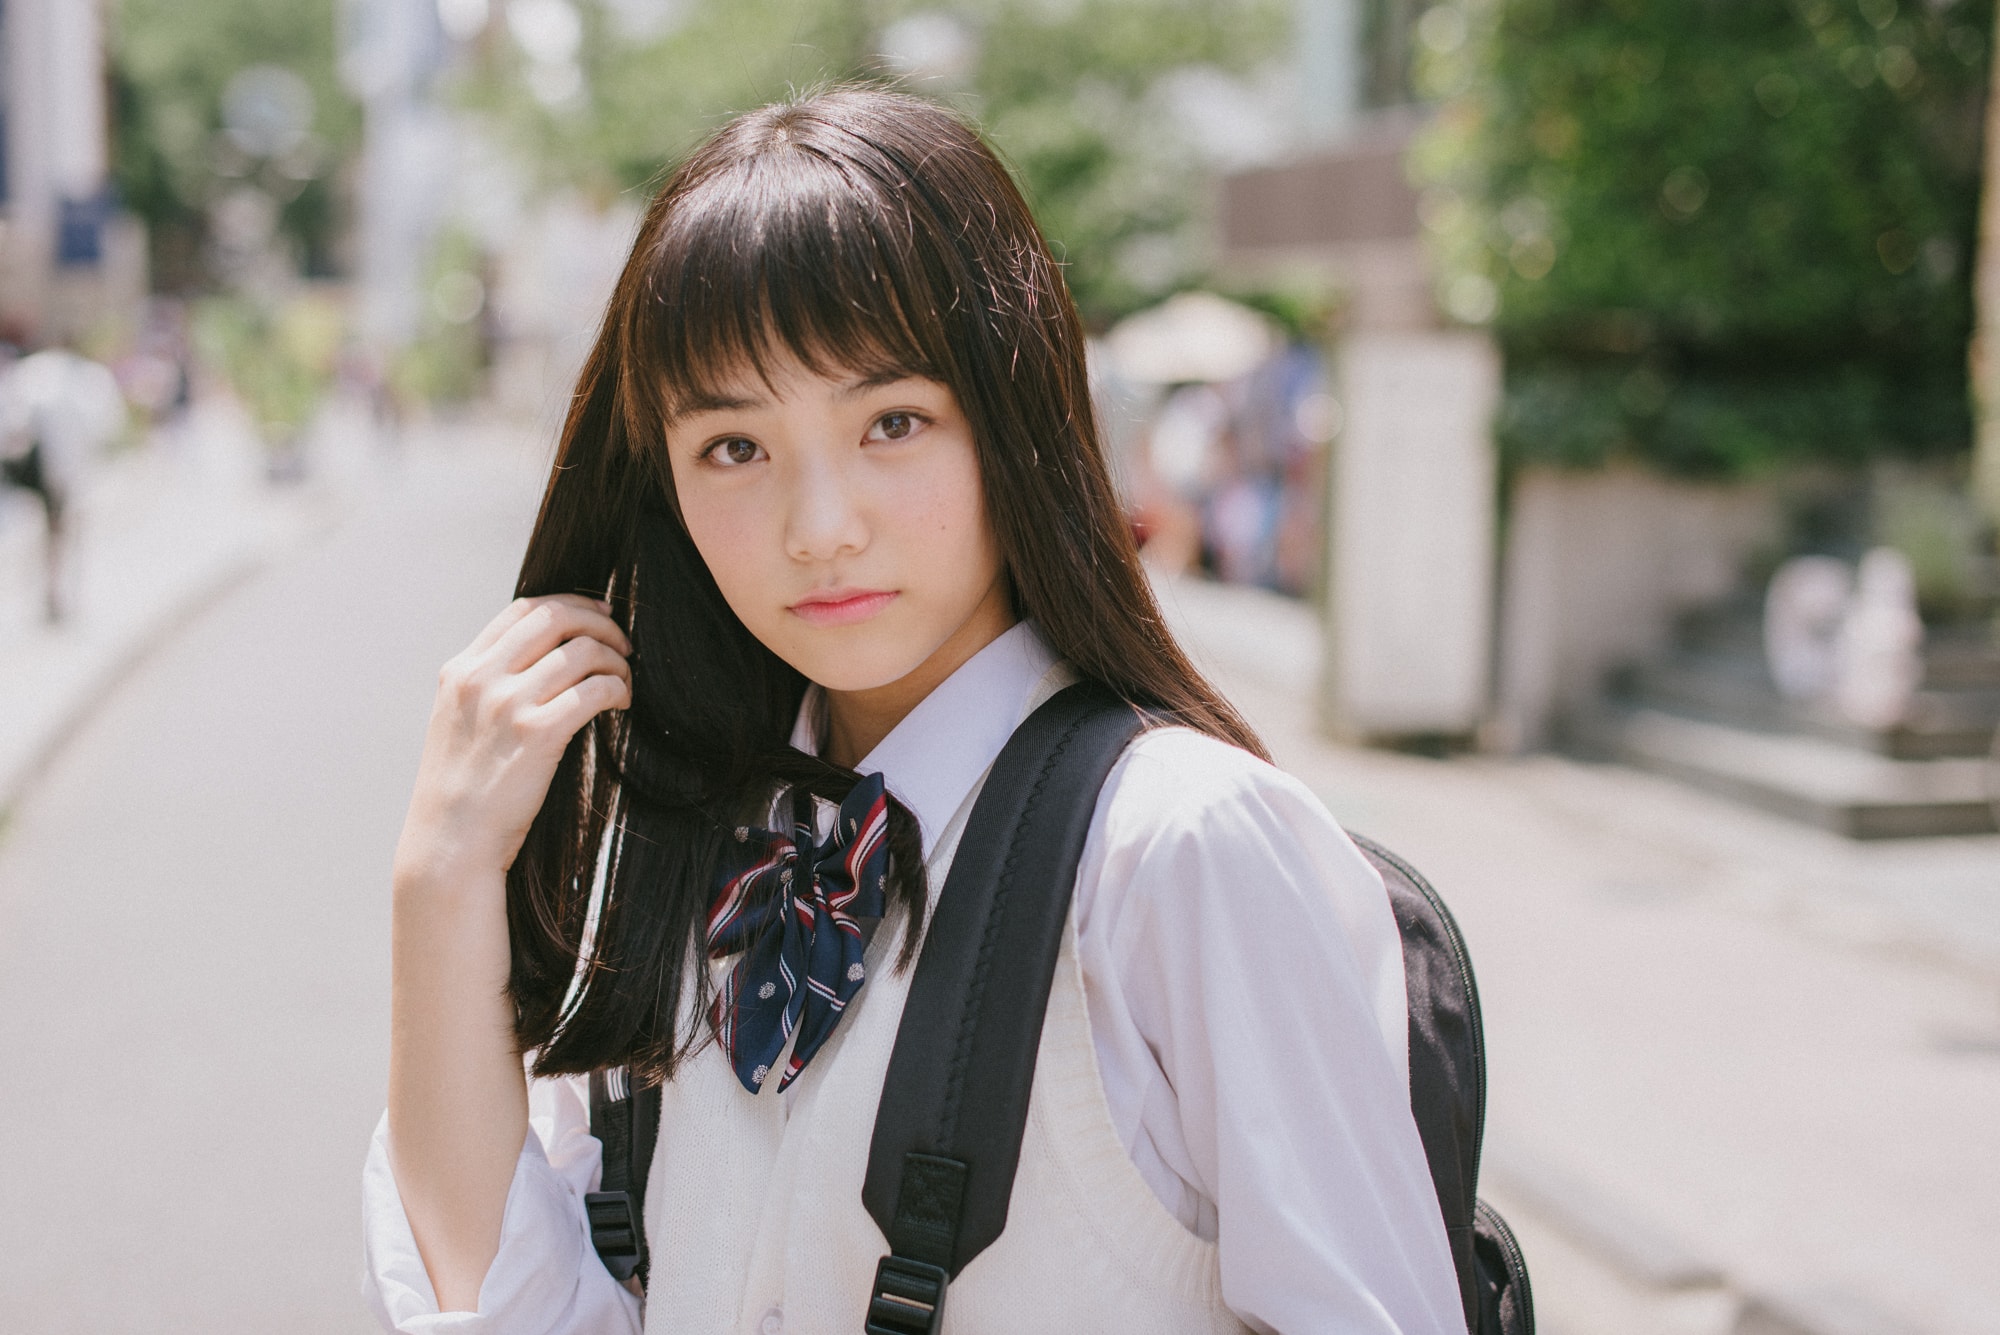 女子高生の流行りのファッショントレンドをチェック！モデル・佐久間乃愛ちゃんによる街頭インタビューレポート